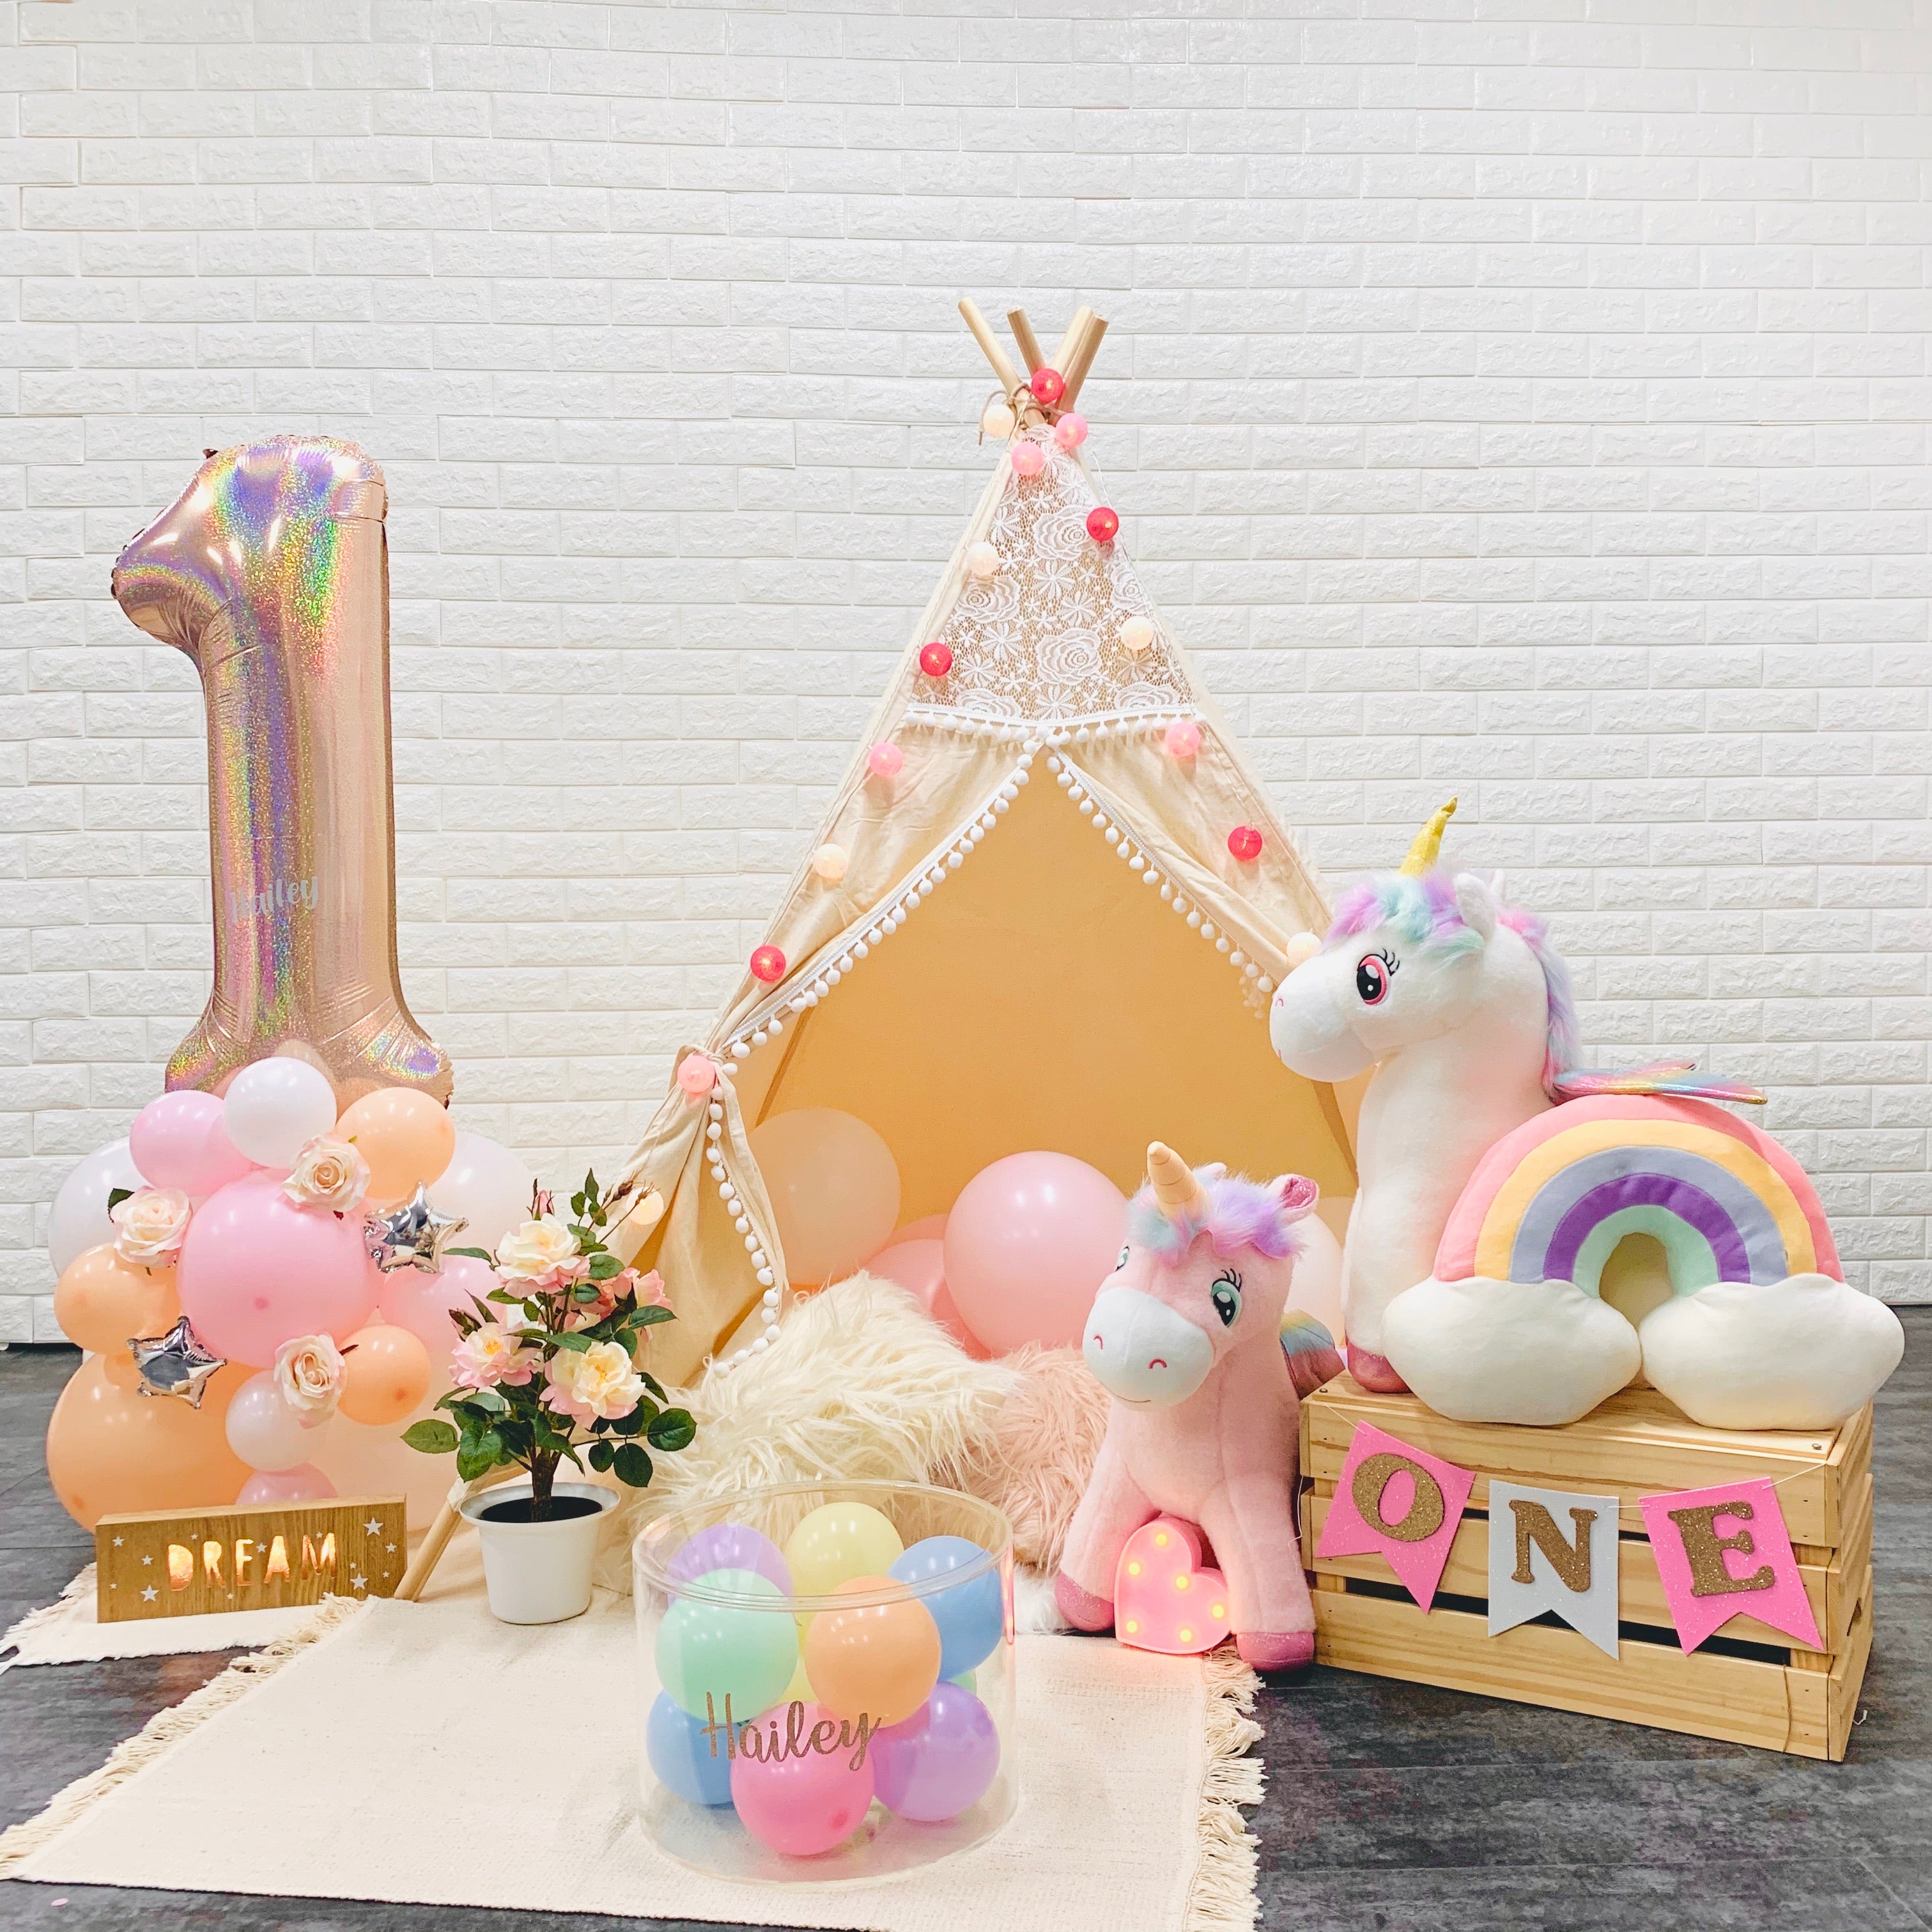 Rustic Unicorn Baby Photoshoot Styled Set - Baby First Birthday and  Cake Smash Celebration Decor